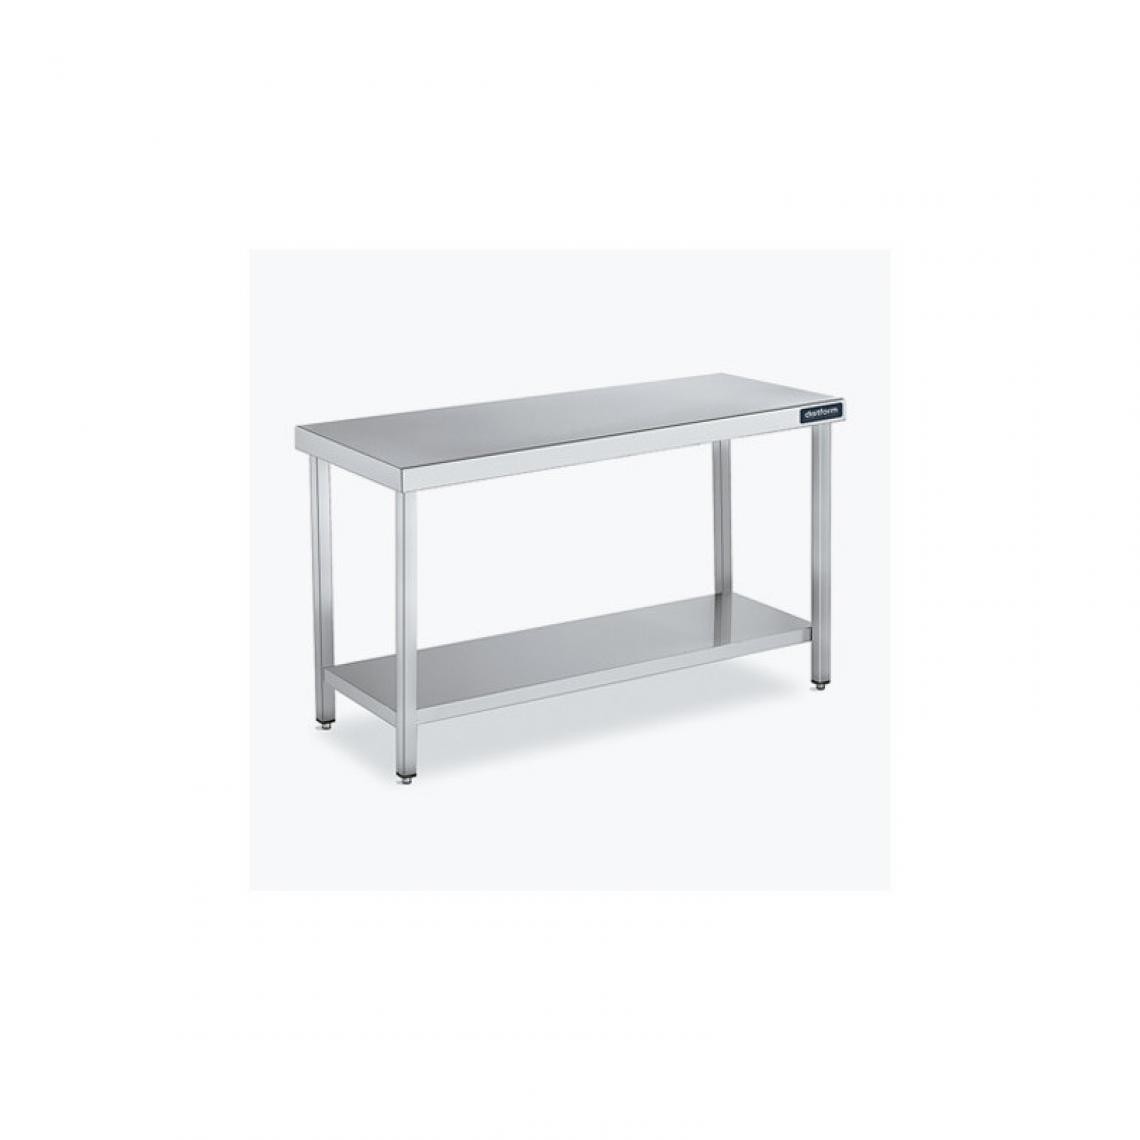 DISTFORM - Table Centrale 600x900 avec Étagère - Distform - Inox 18/101900x900x850mm - Tables à manger